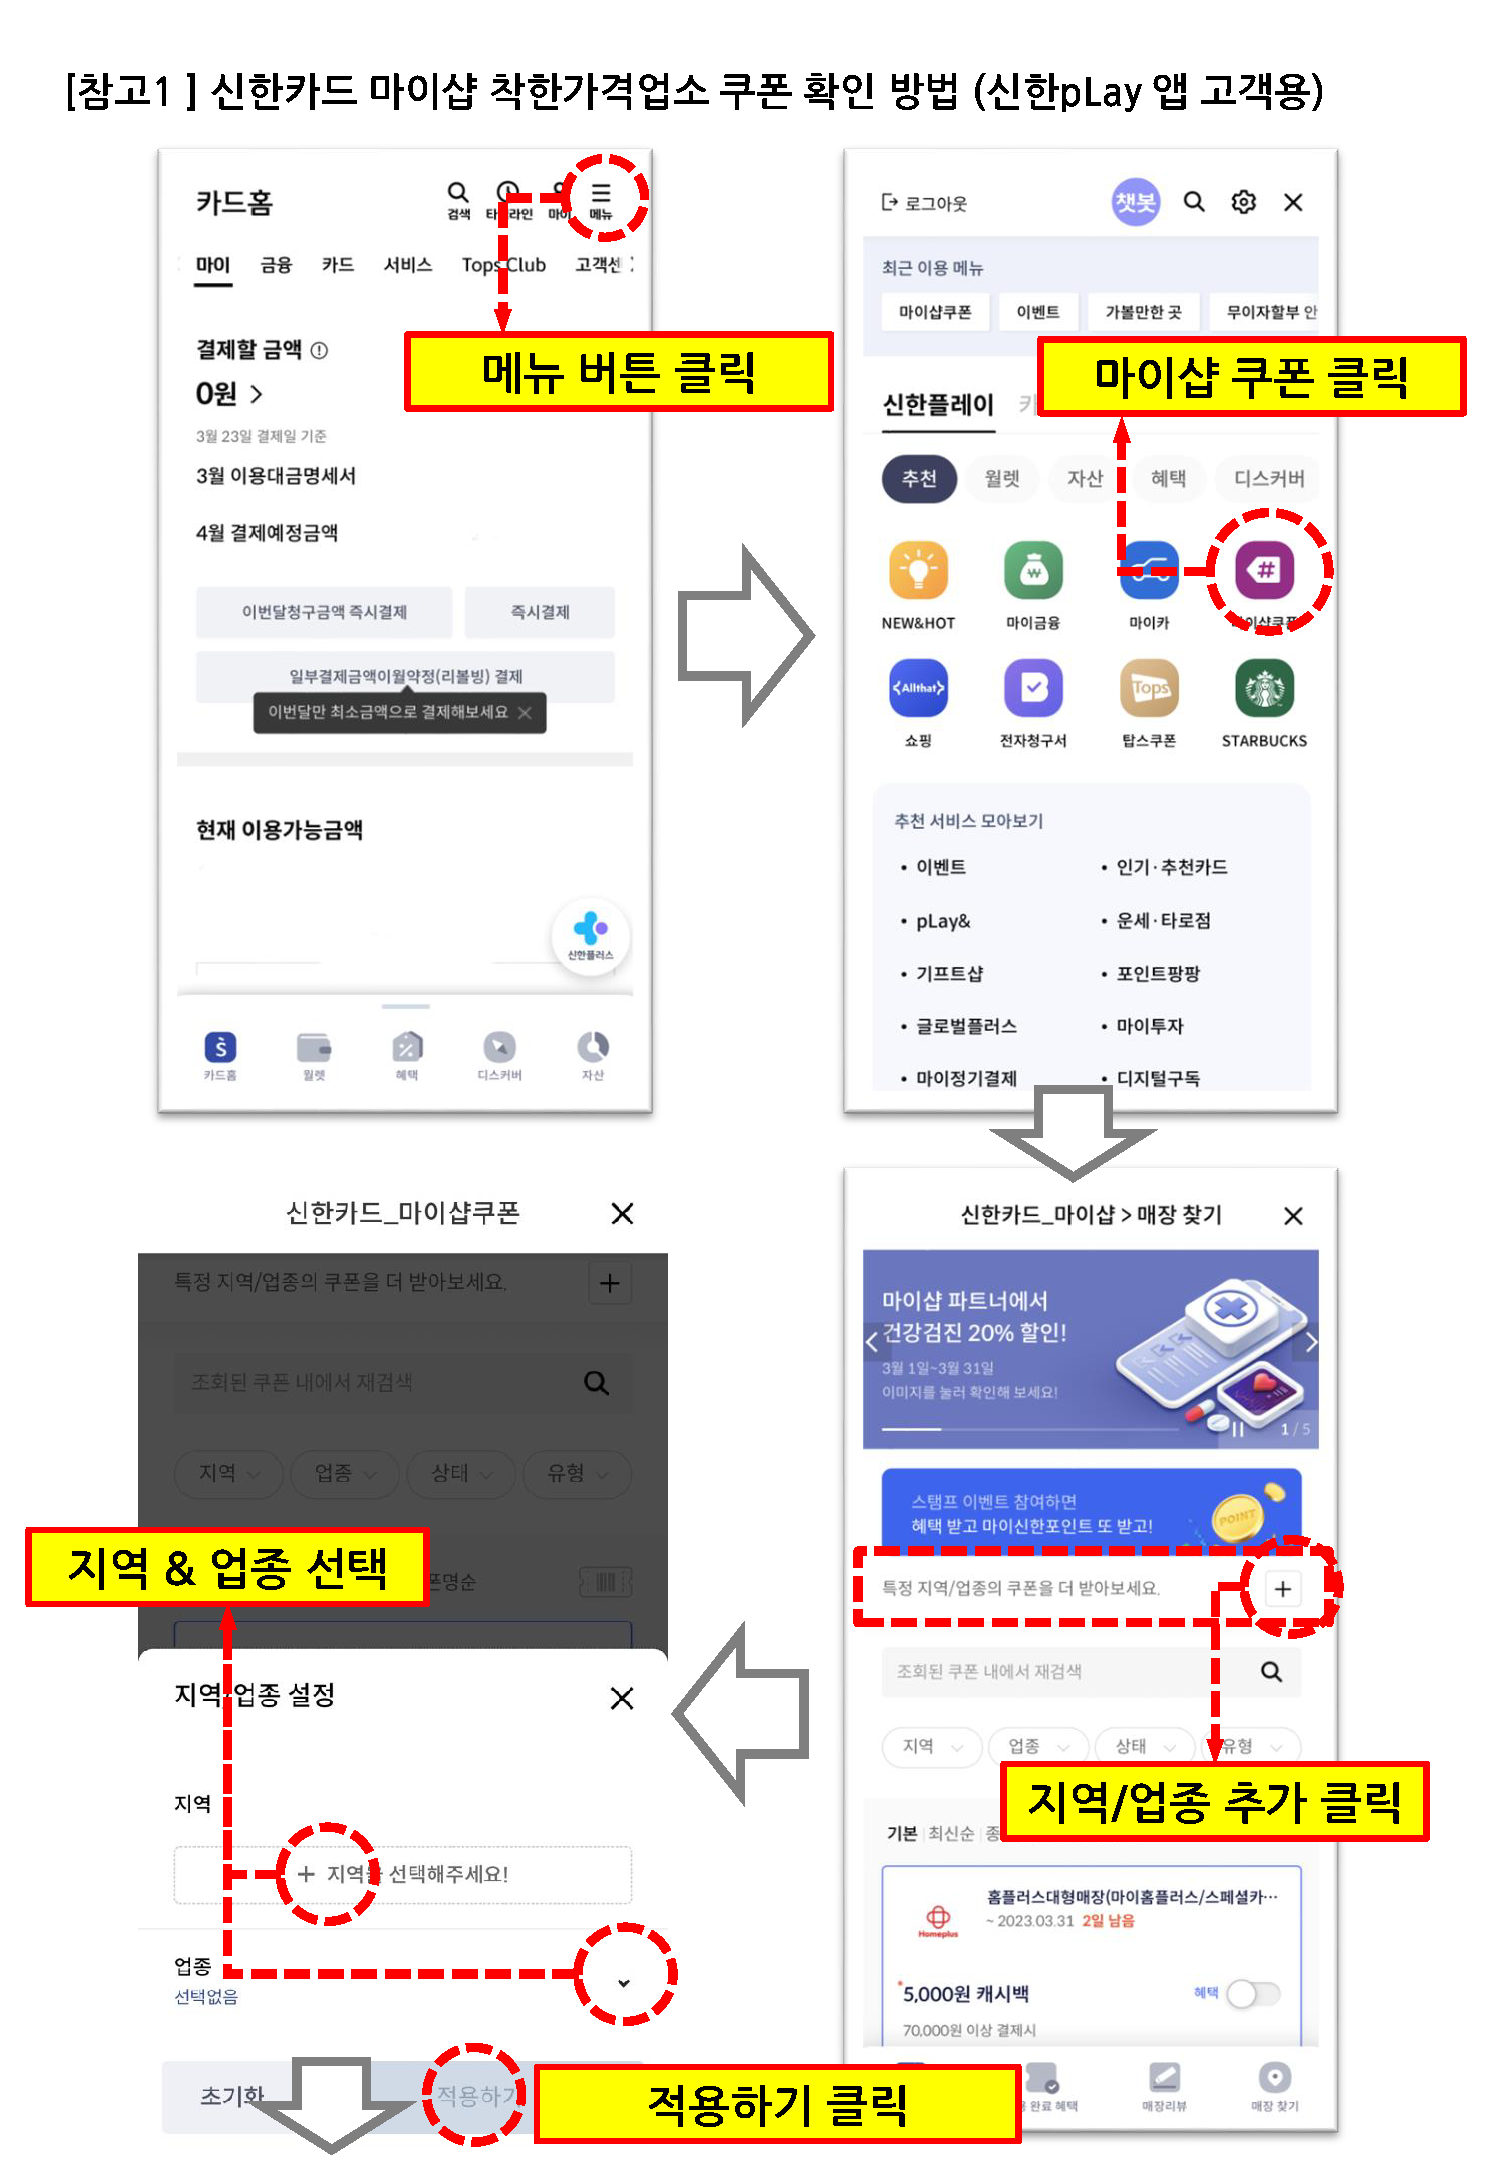 착한가격업소 관련 신한카드 행사 안내 첨부#2